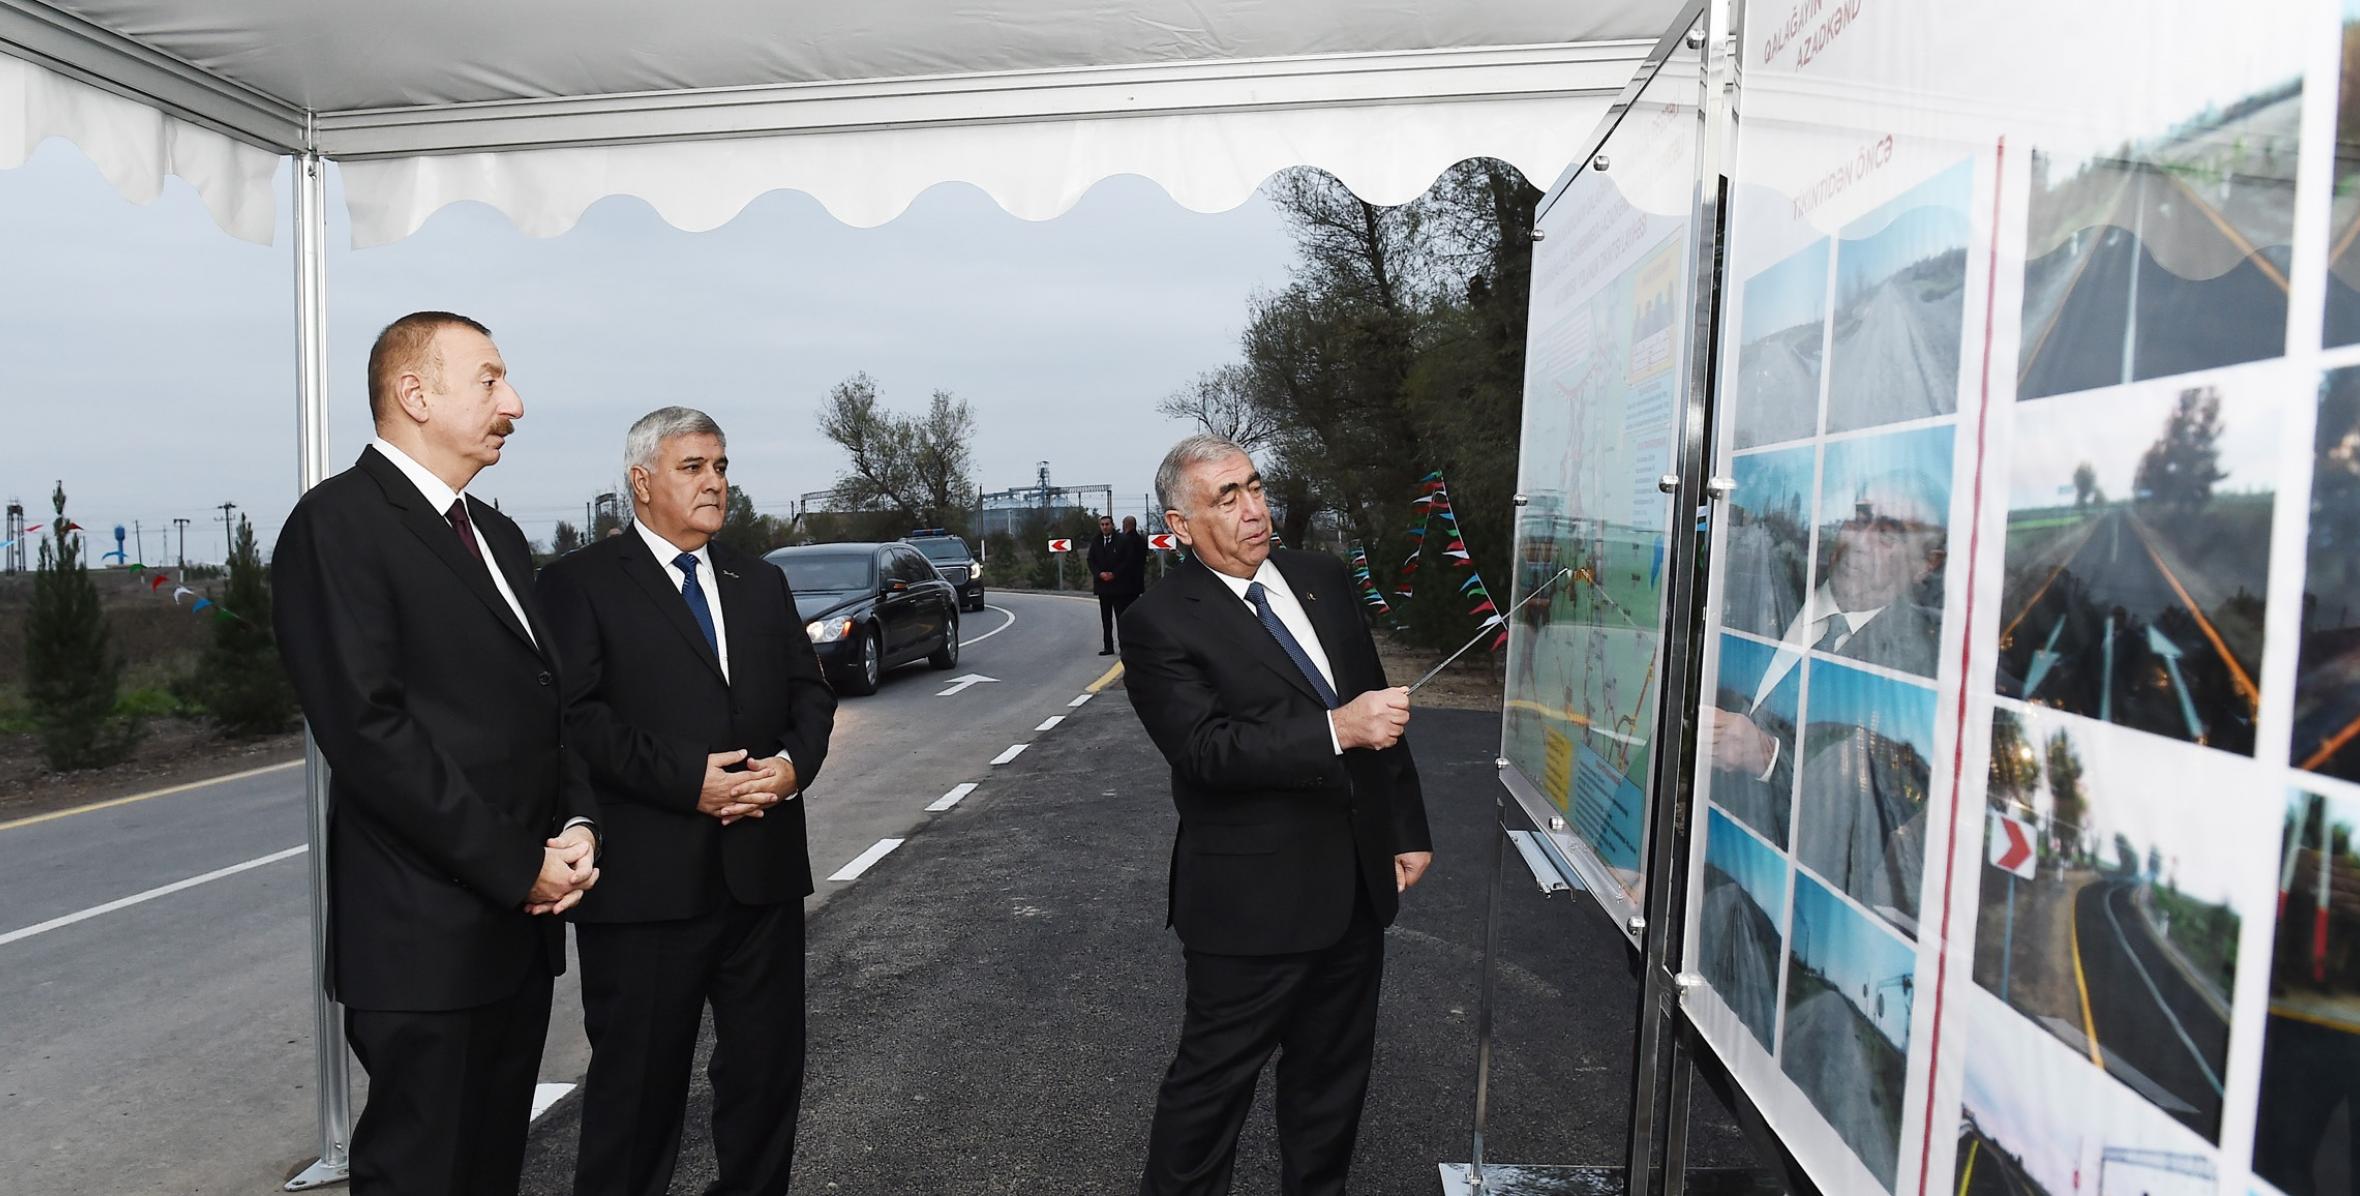 İlham Əliyev Sabirabadda Qalağayın-Muğan Gəncəli avtomobil yolunun açılışında iştirak edib